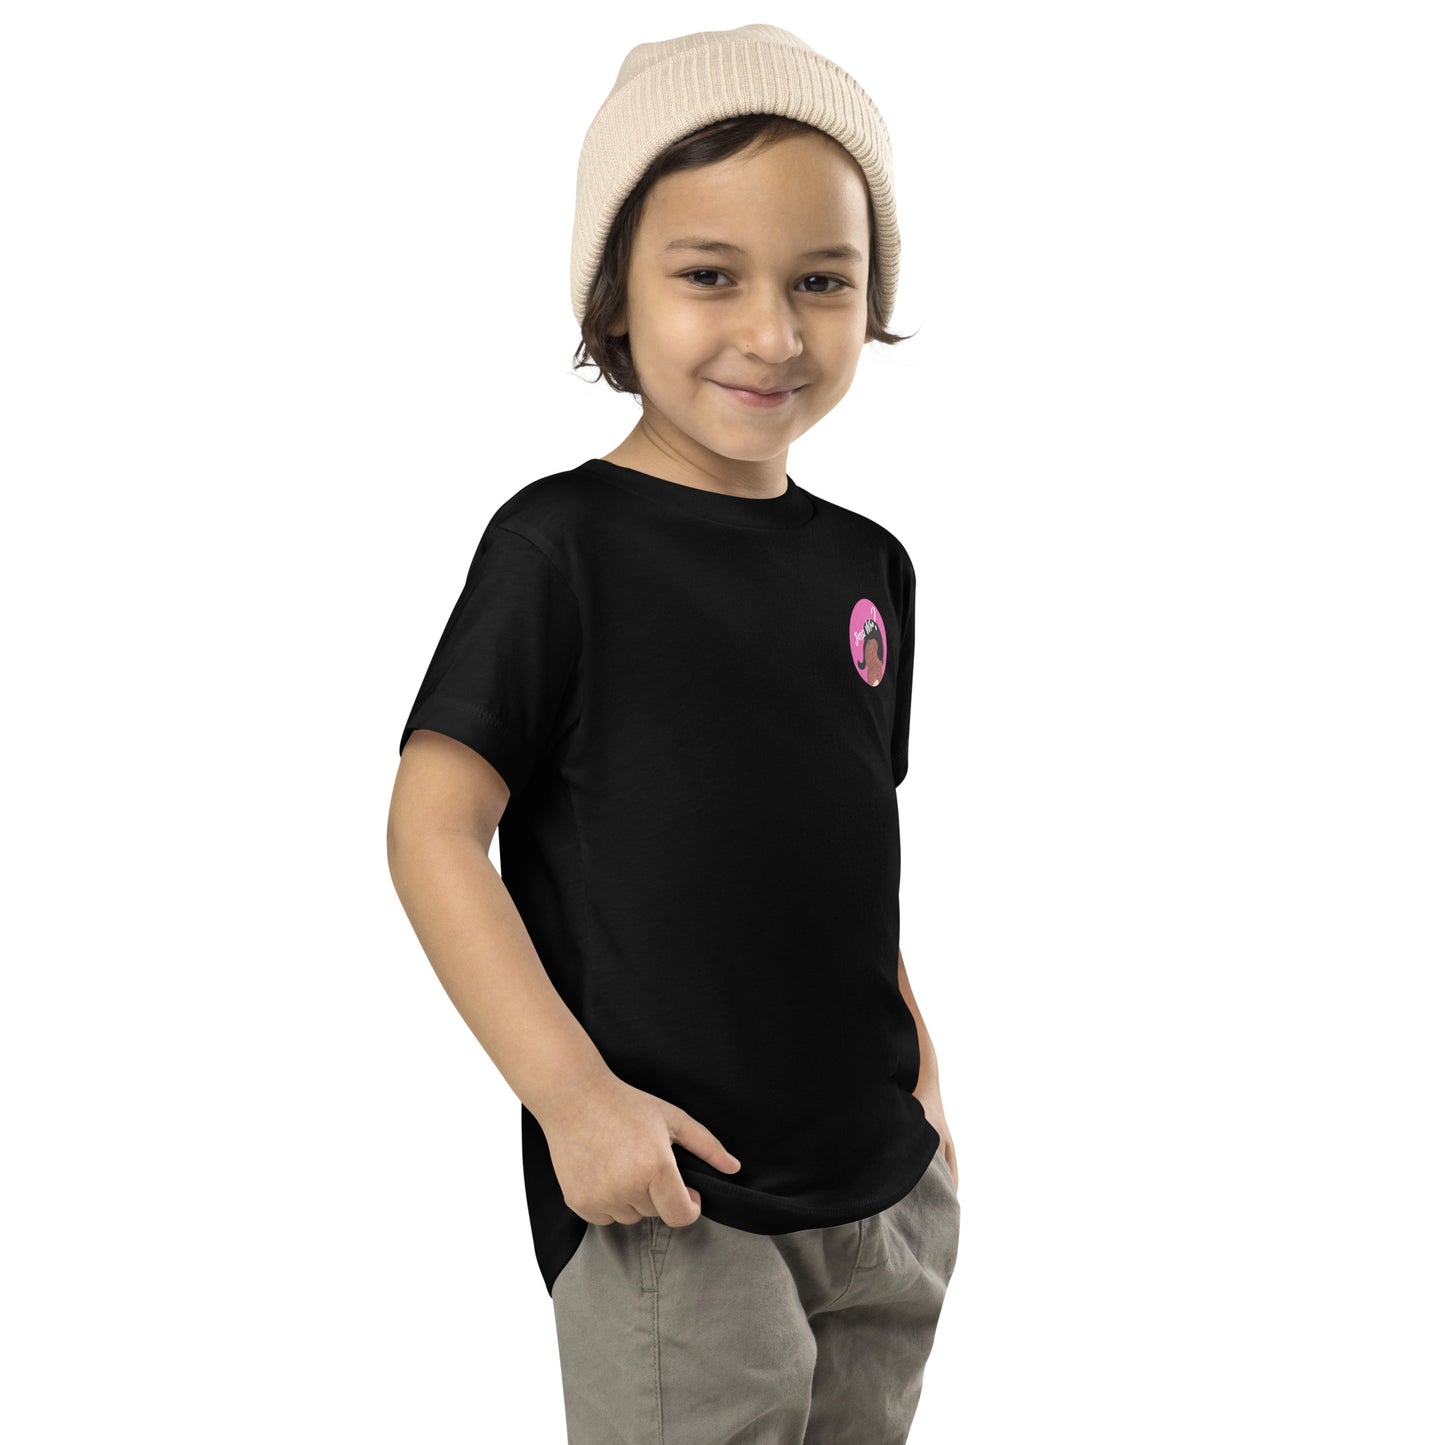 Jessi Who? logo toddler shirt (unisex - 100% cotton)